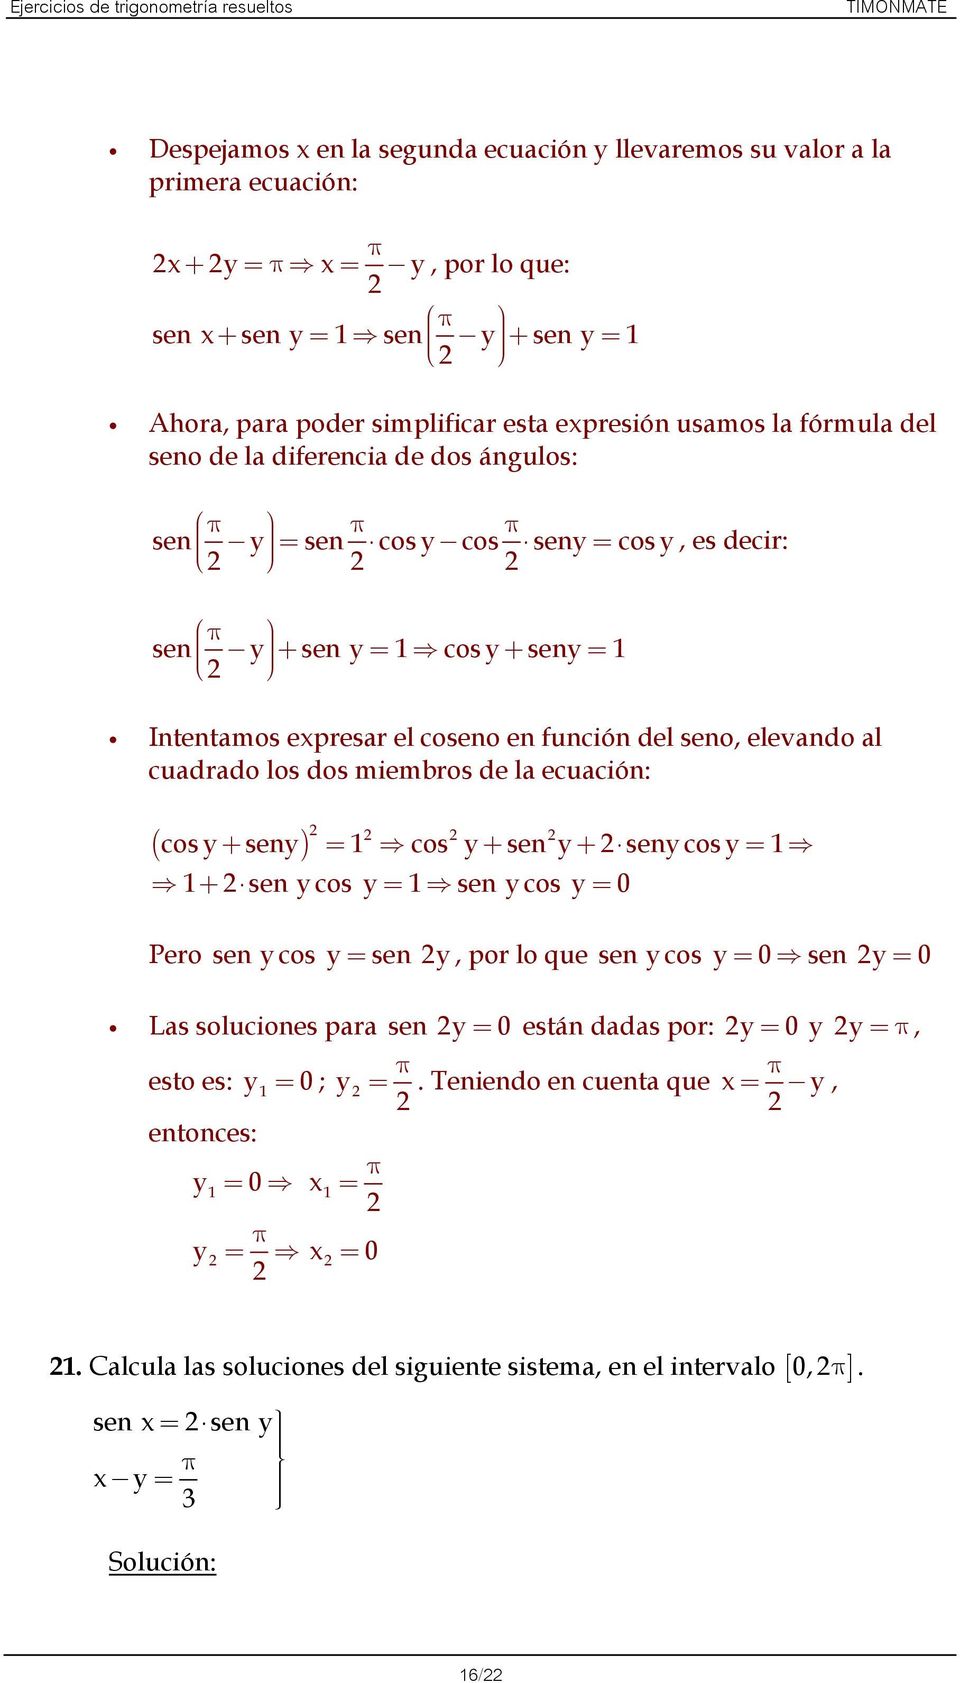 seno, elevando al cuadrado los dos miembros de la ecuación: ( ) cos + sen = cos + sen + sen cos = + sen cos = sen cos = 0 Pero sen cos = sen, por lo que sen cos = 0 sen = 0 Las soluciones para